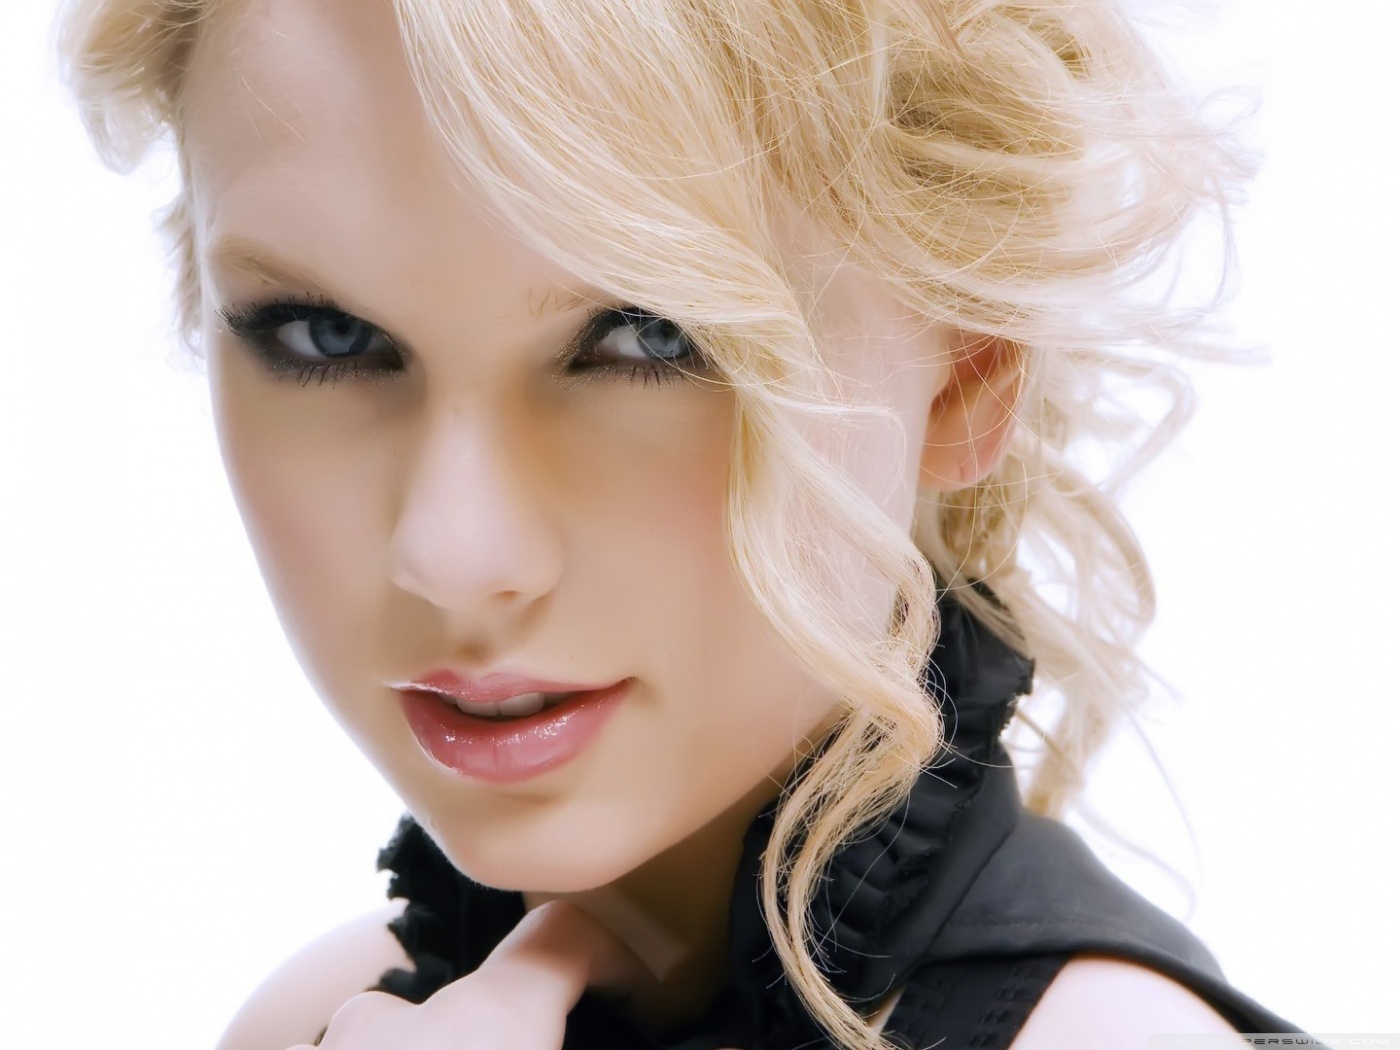 Hd Pics Of Taylor Swift - HD Wallpaper 